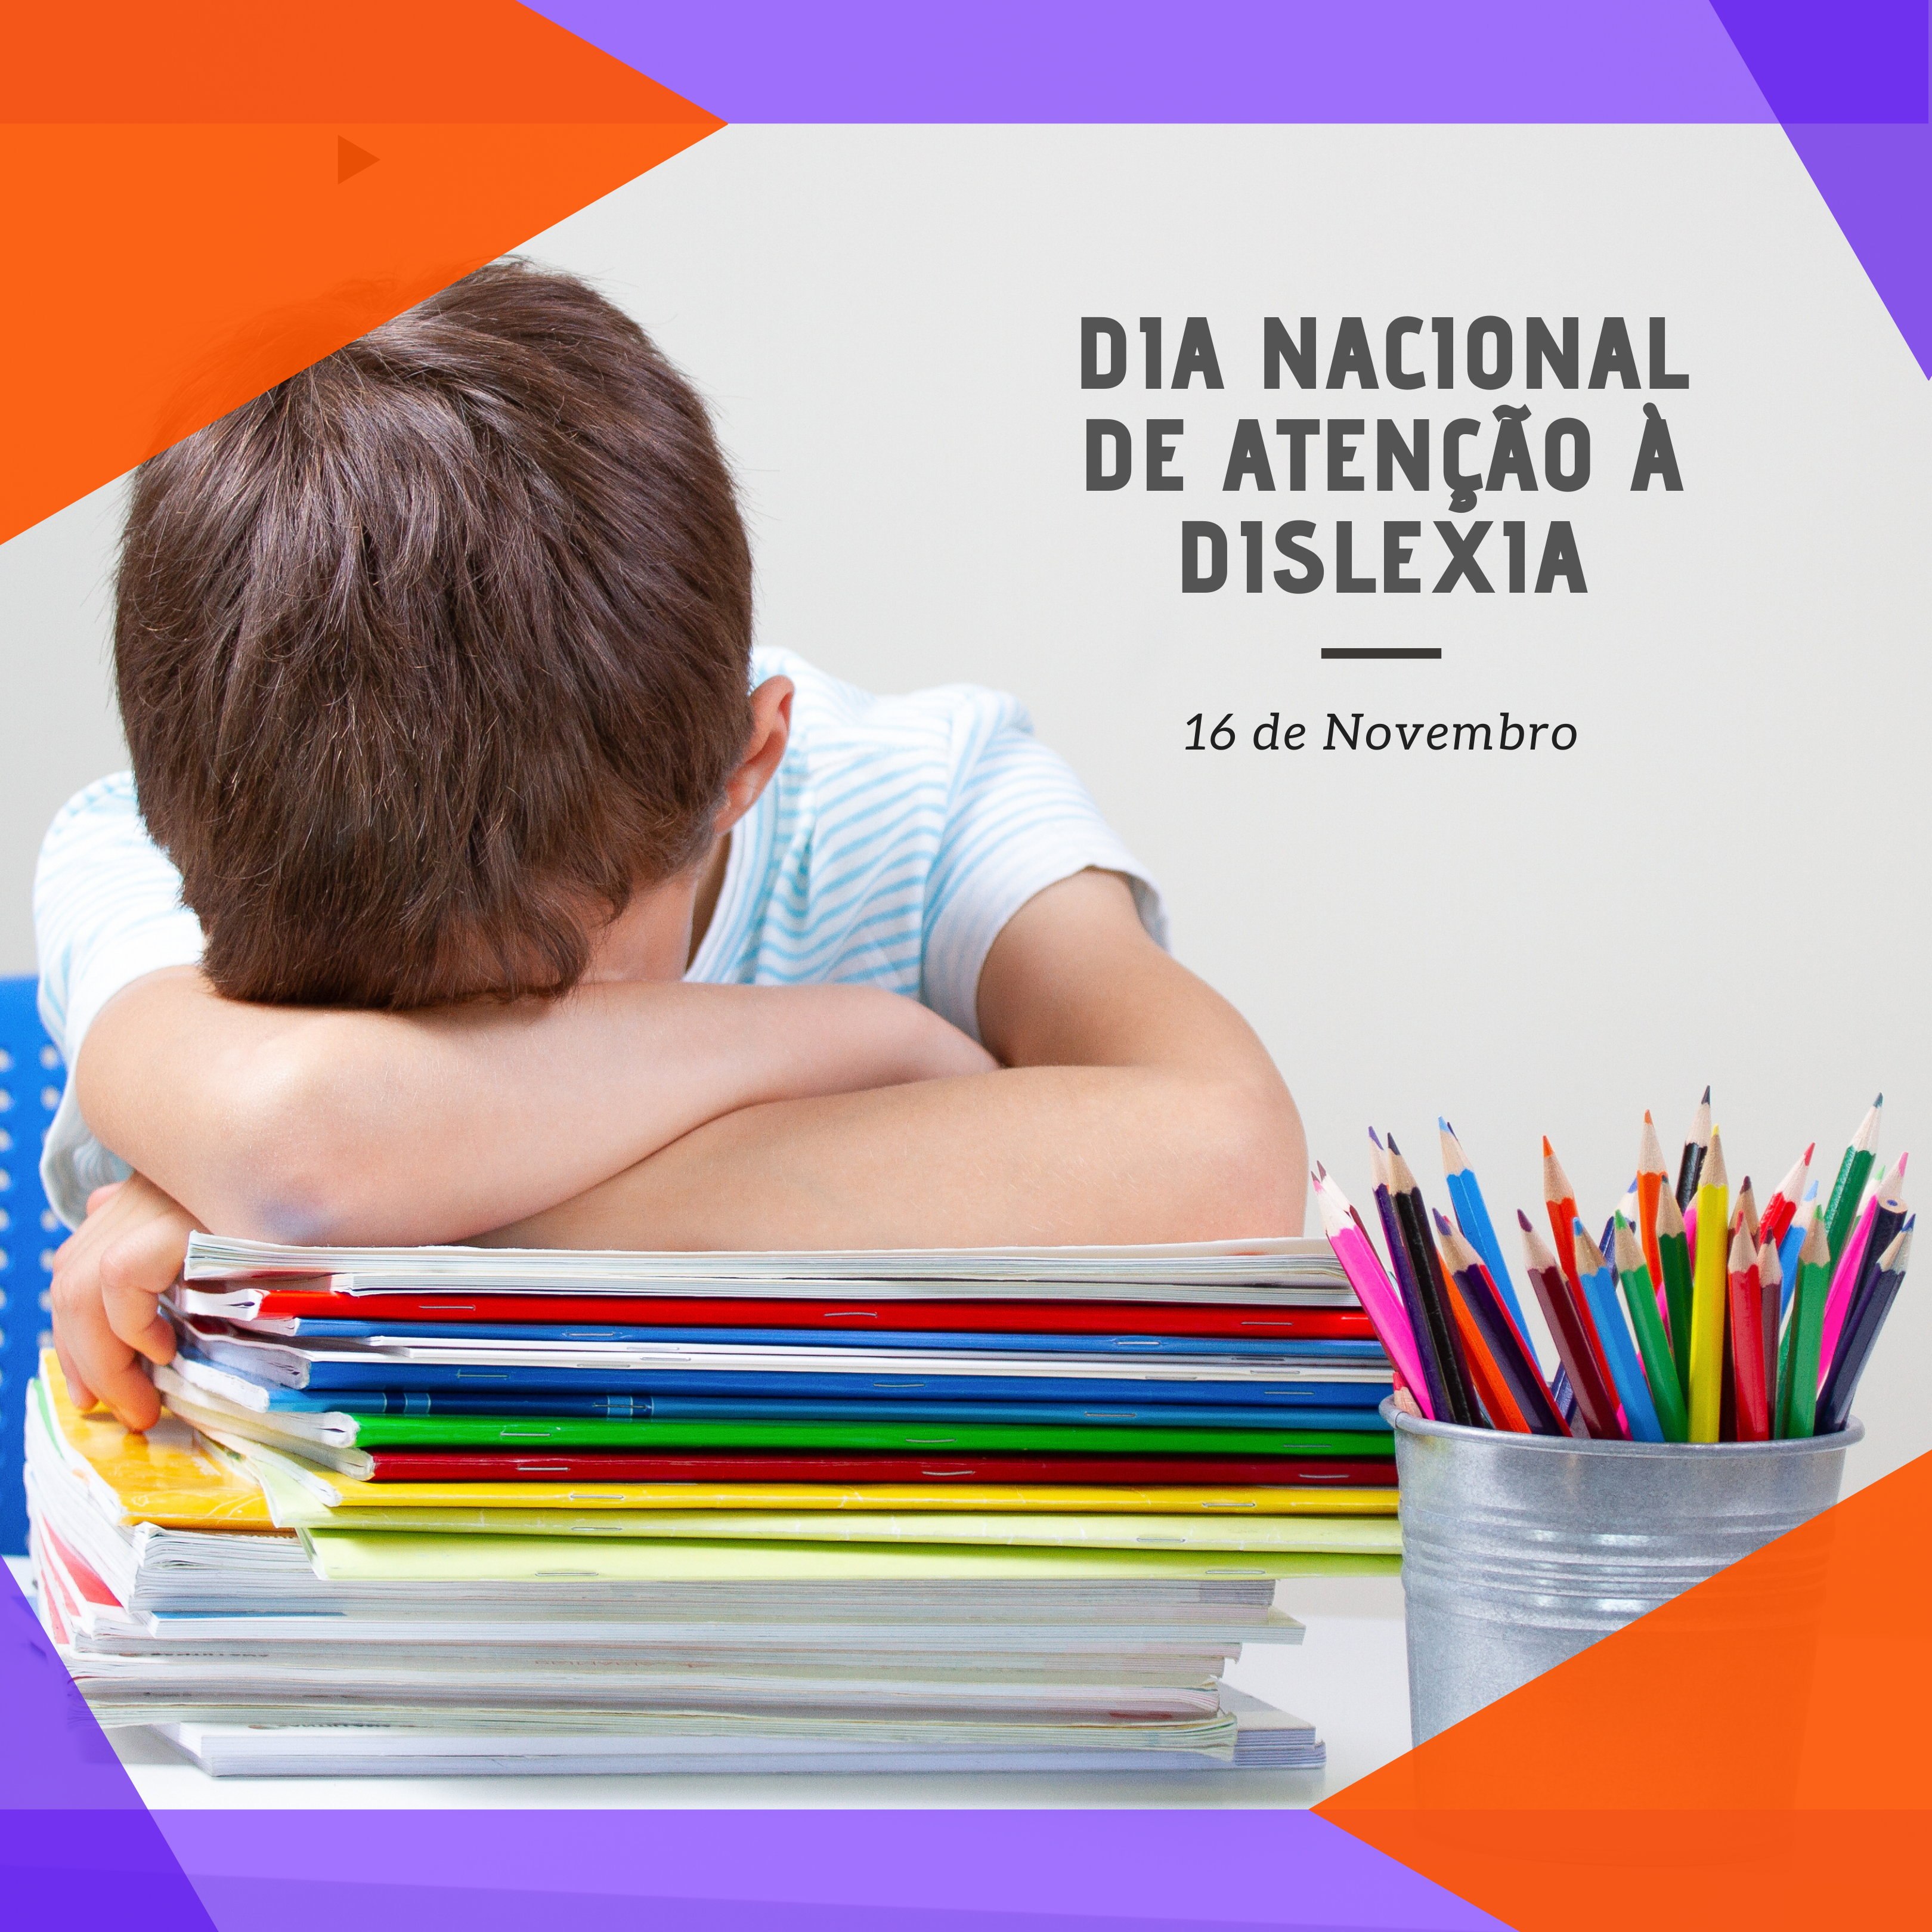 Saiba mais sobre a dislexia no Dia Nacional da Dislexia